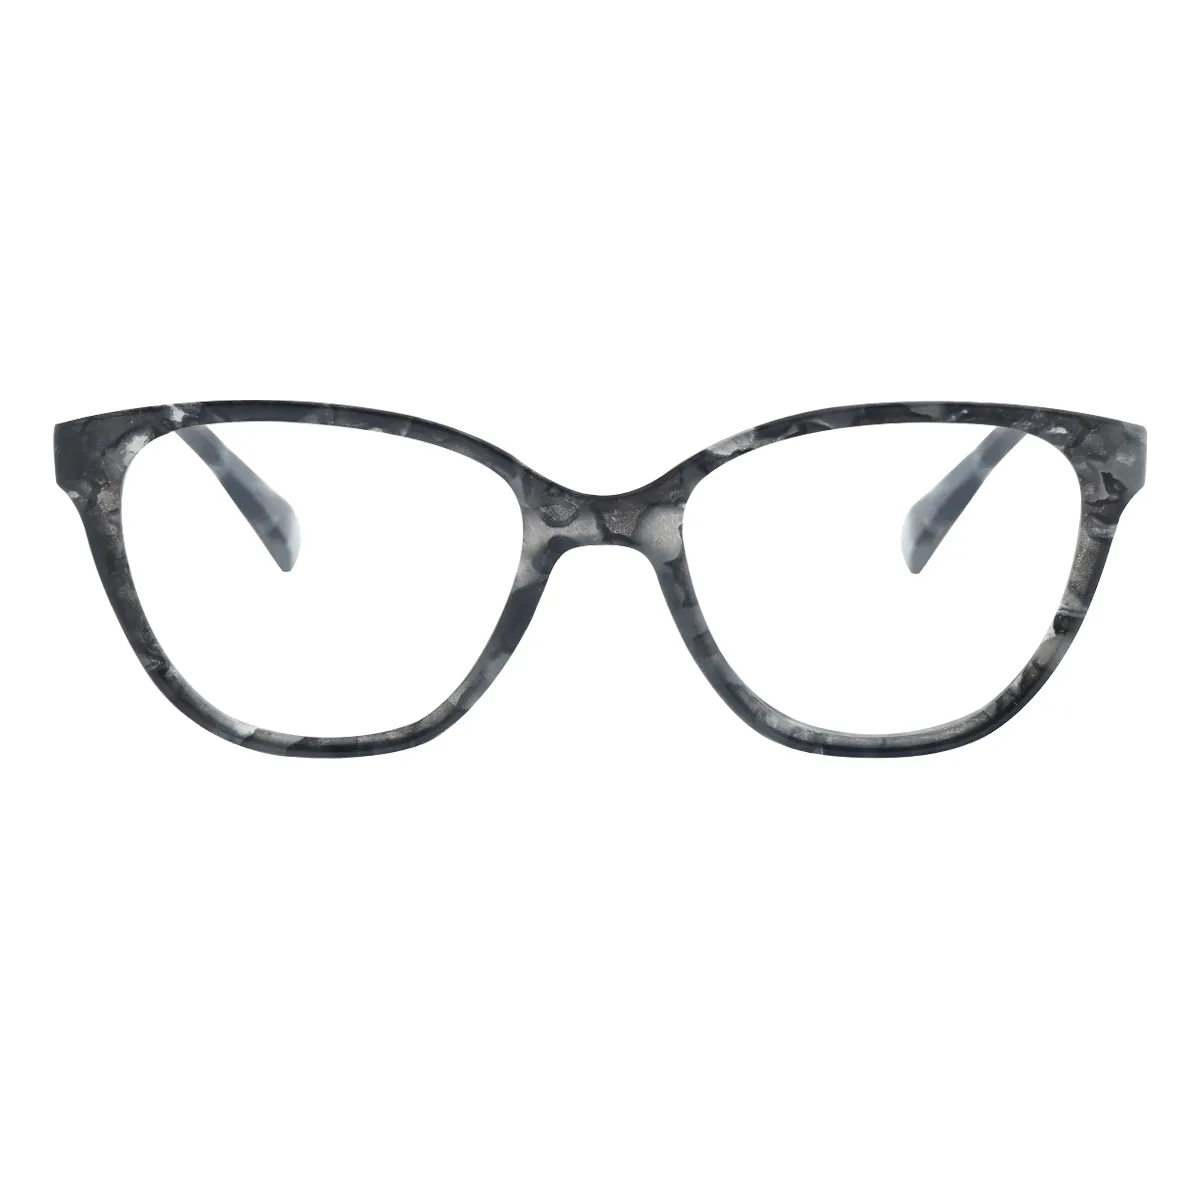 Fashion Cat-eye Black  Reading Glasses for Women & Men